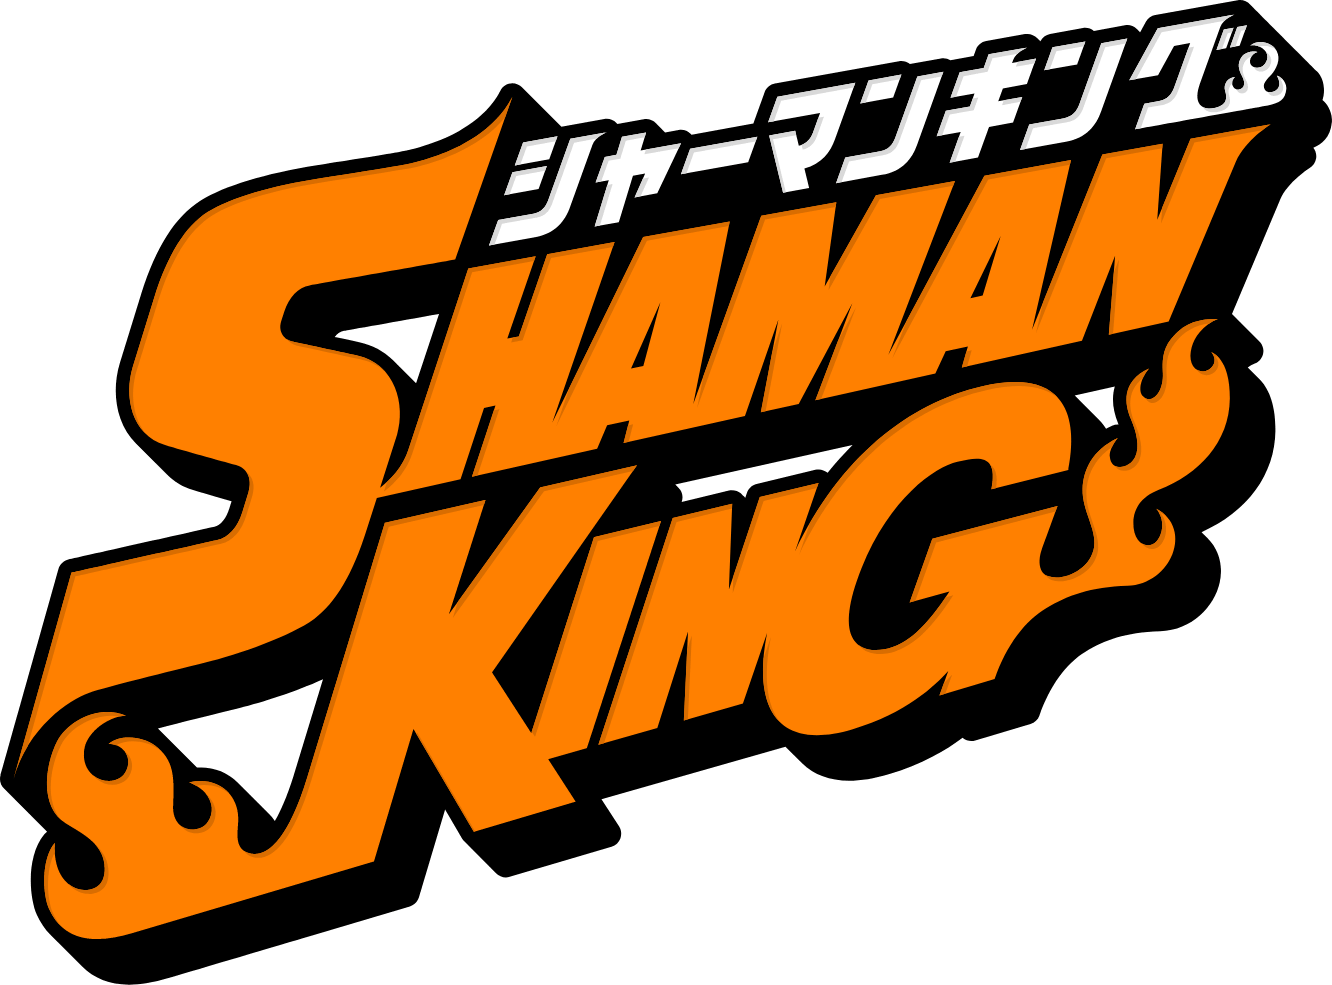 Shaman King 21 Shaman King Wiki Fandom